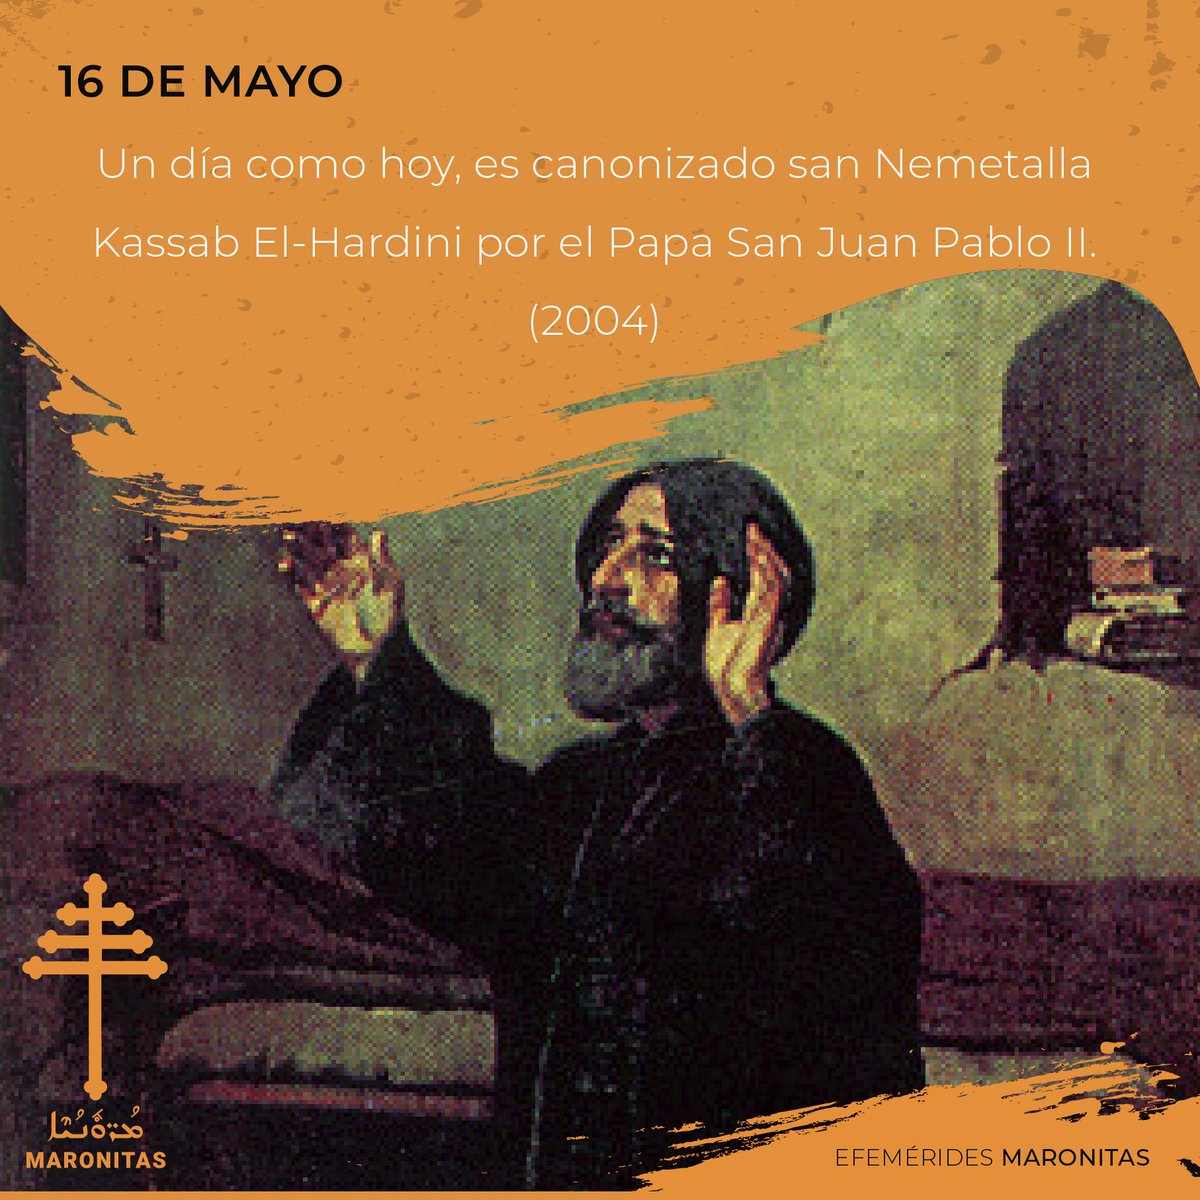 16 de mayo
Aniversario de la canonización de San Ne’metala Kassab Al-Hardini
Monje maronita y maestro de san charbel